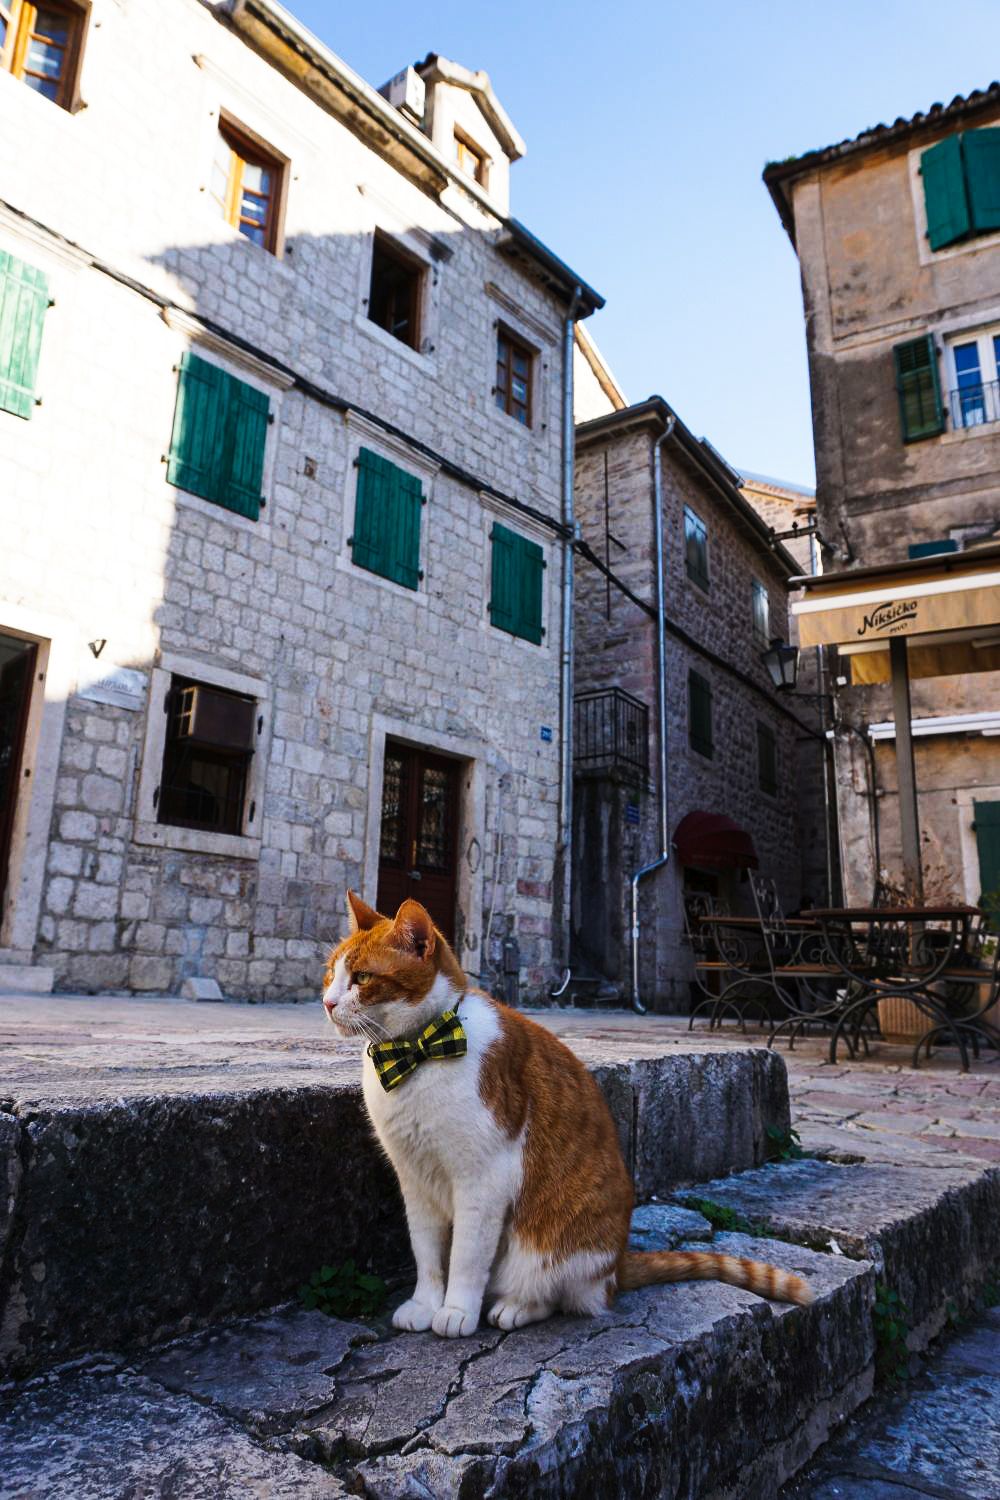 Koci gentelman sprawdzał się w roli przewodnika po Kotorze.